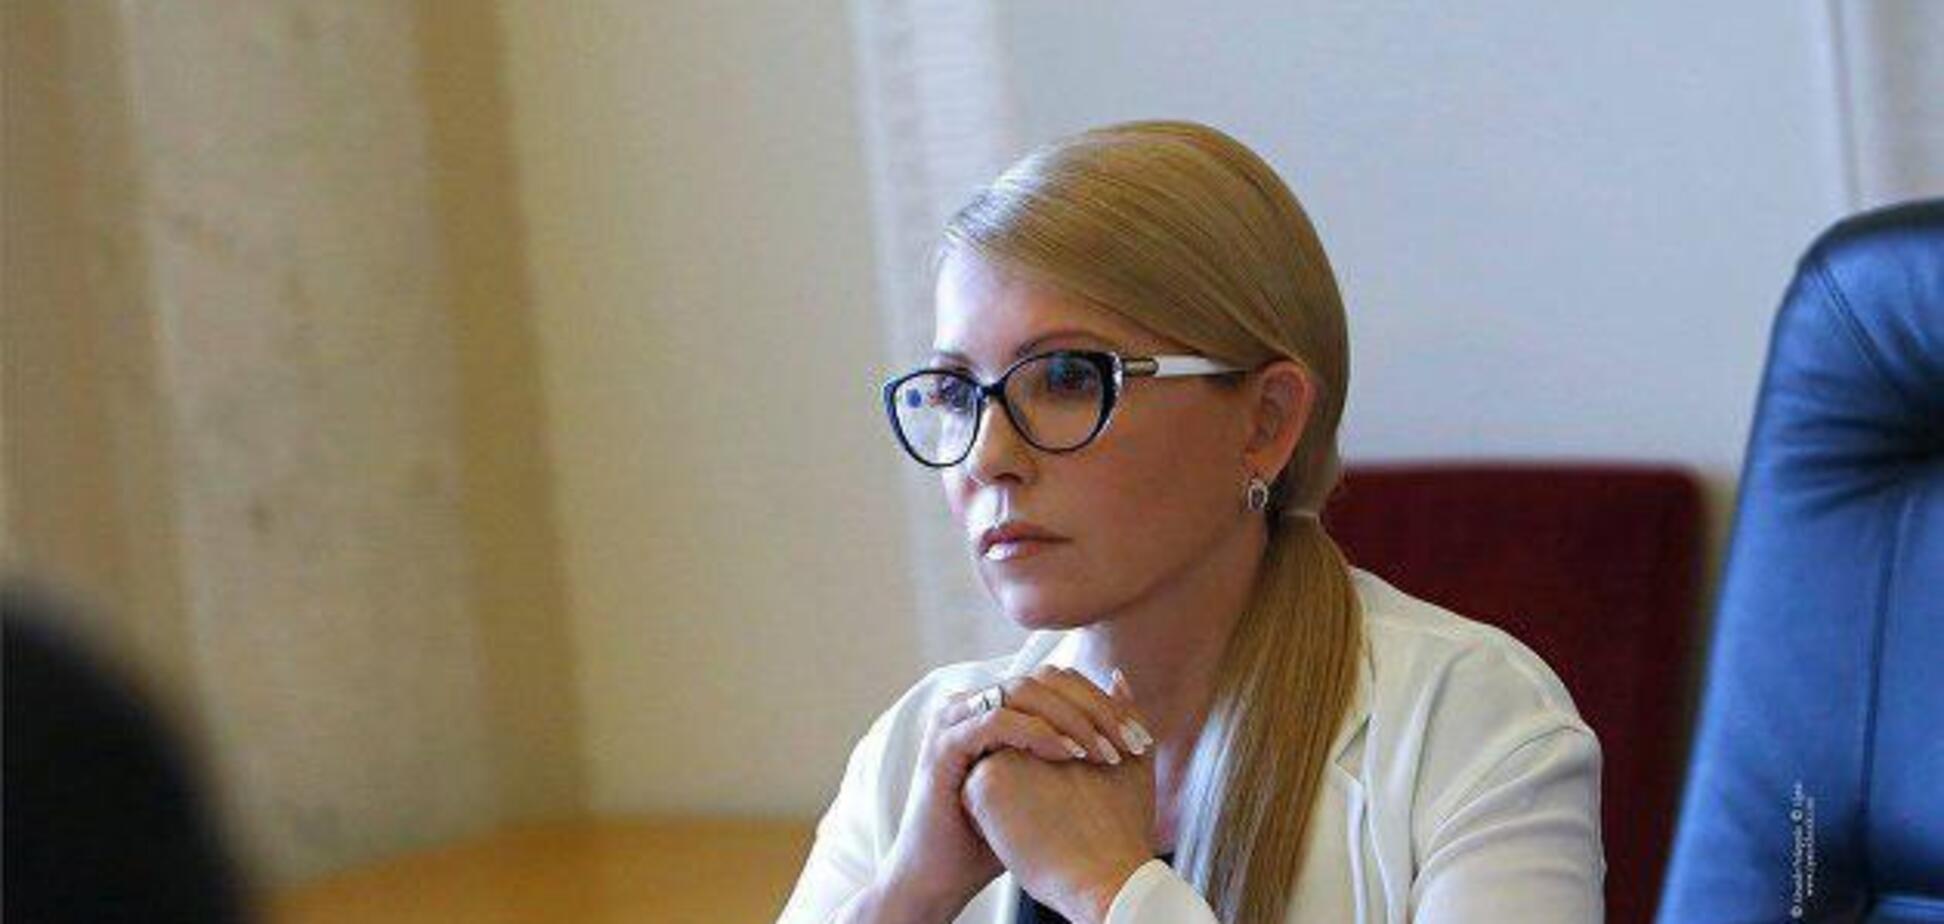 Тимошенко: в Украине все чаще нападают на активистов, но власть не реагирует